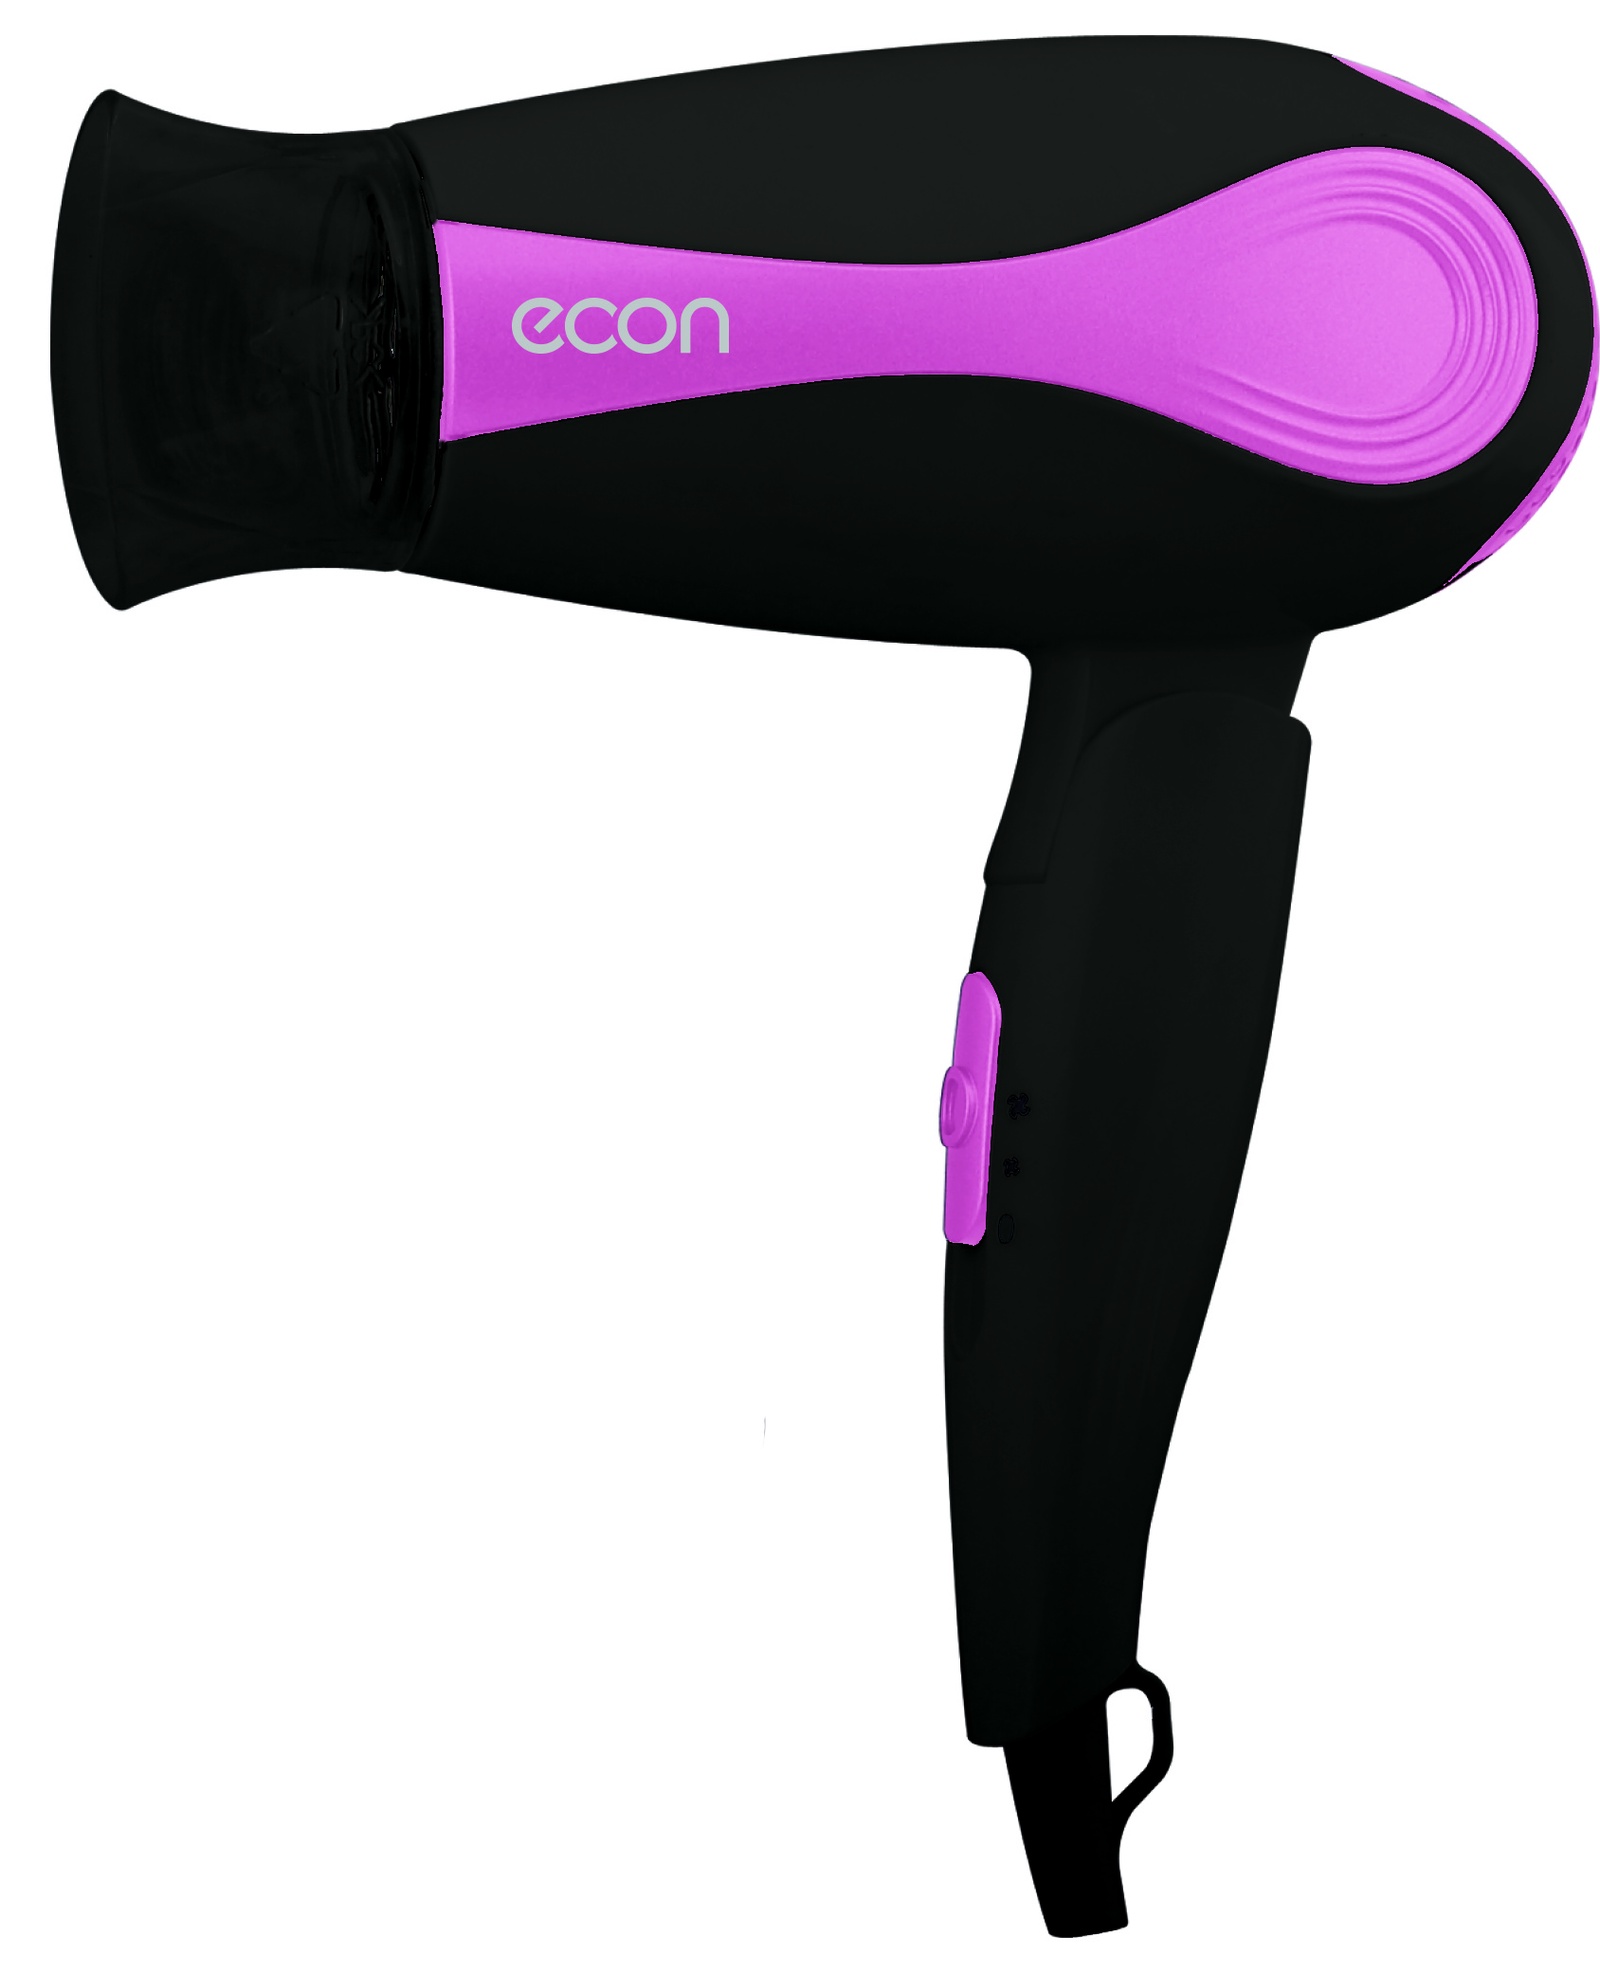 Фен для волос ECON ECO-BH161D, розовый